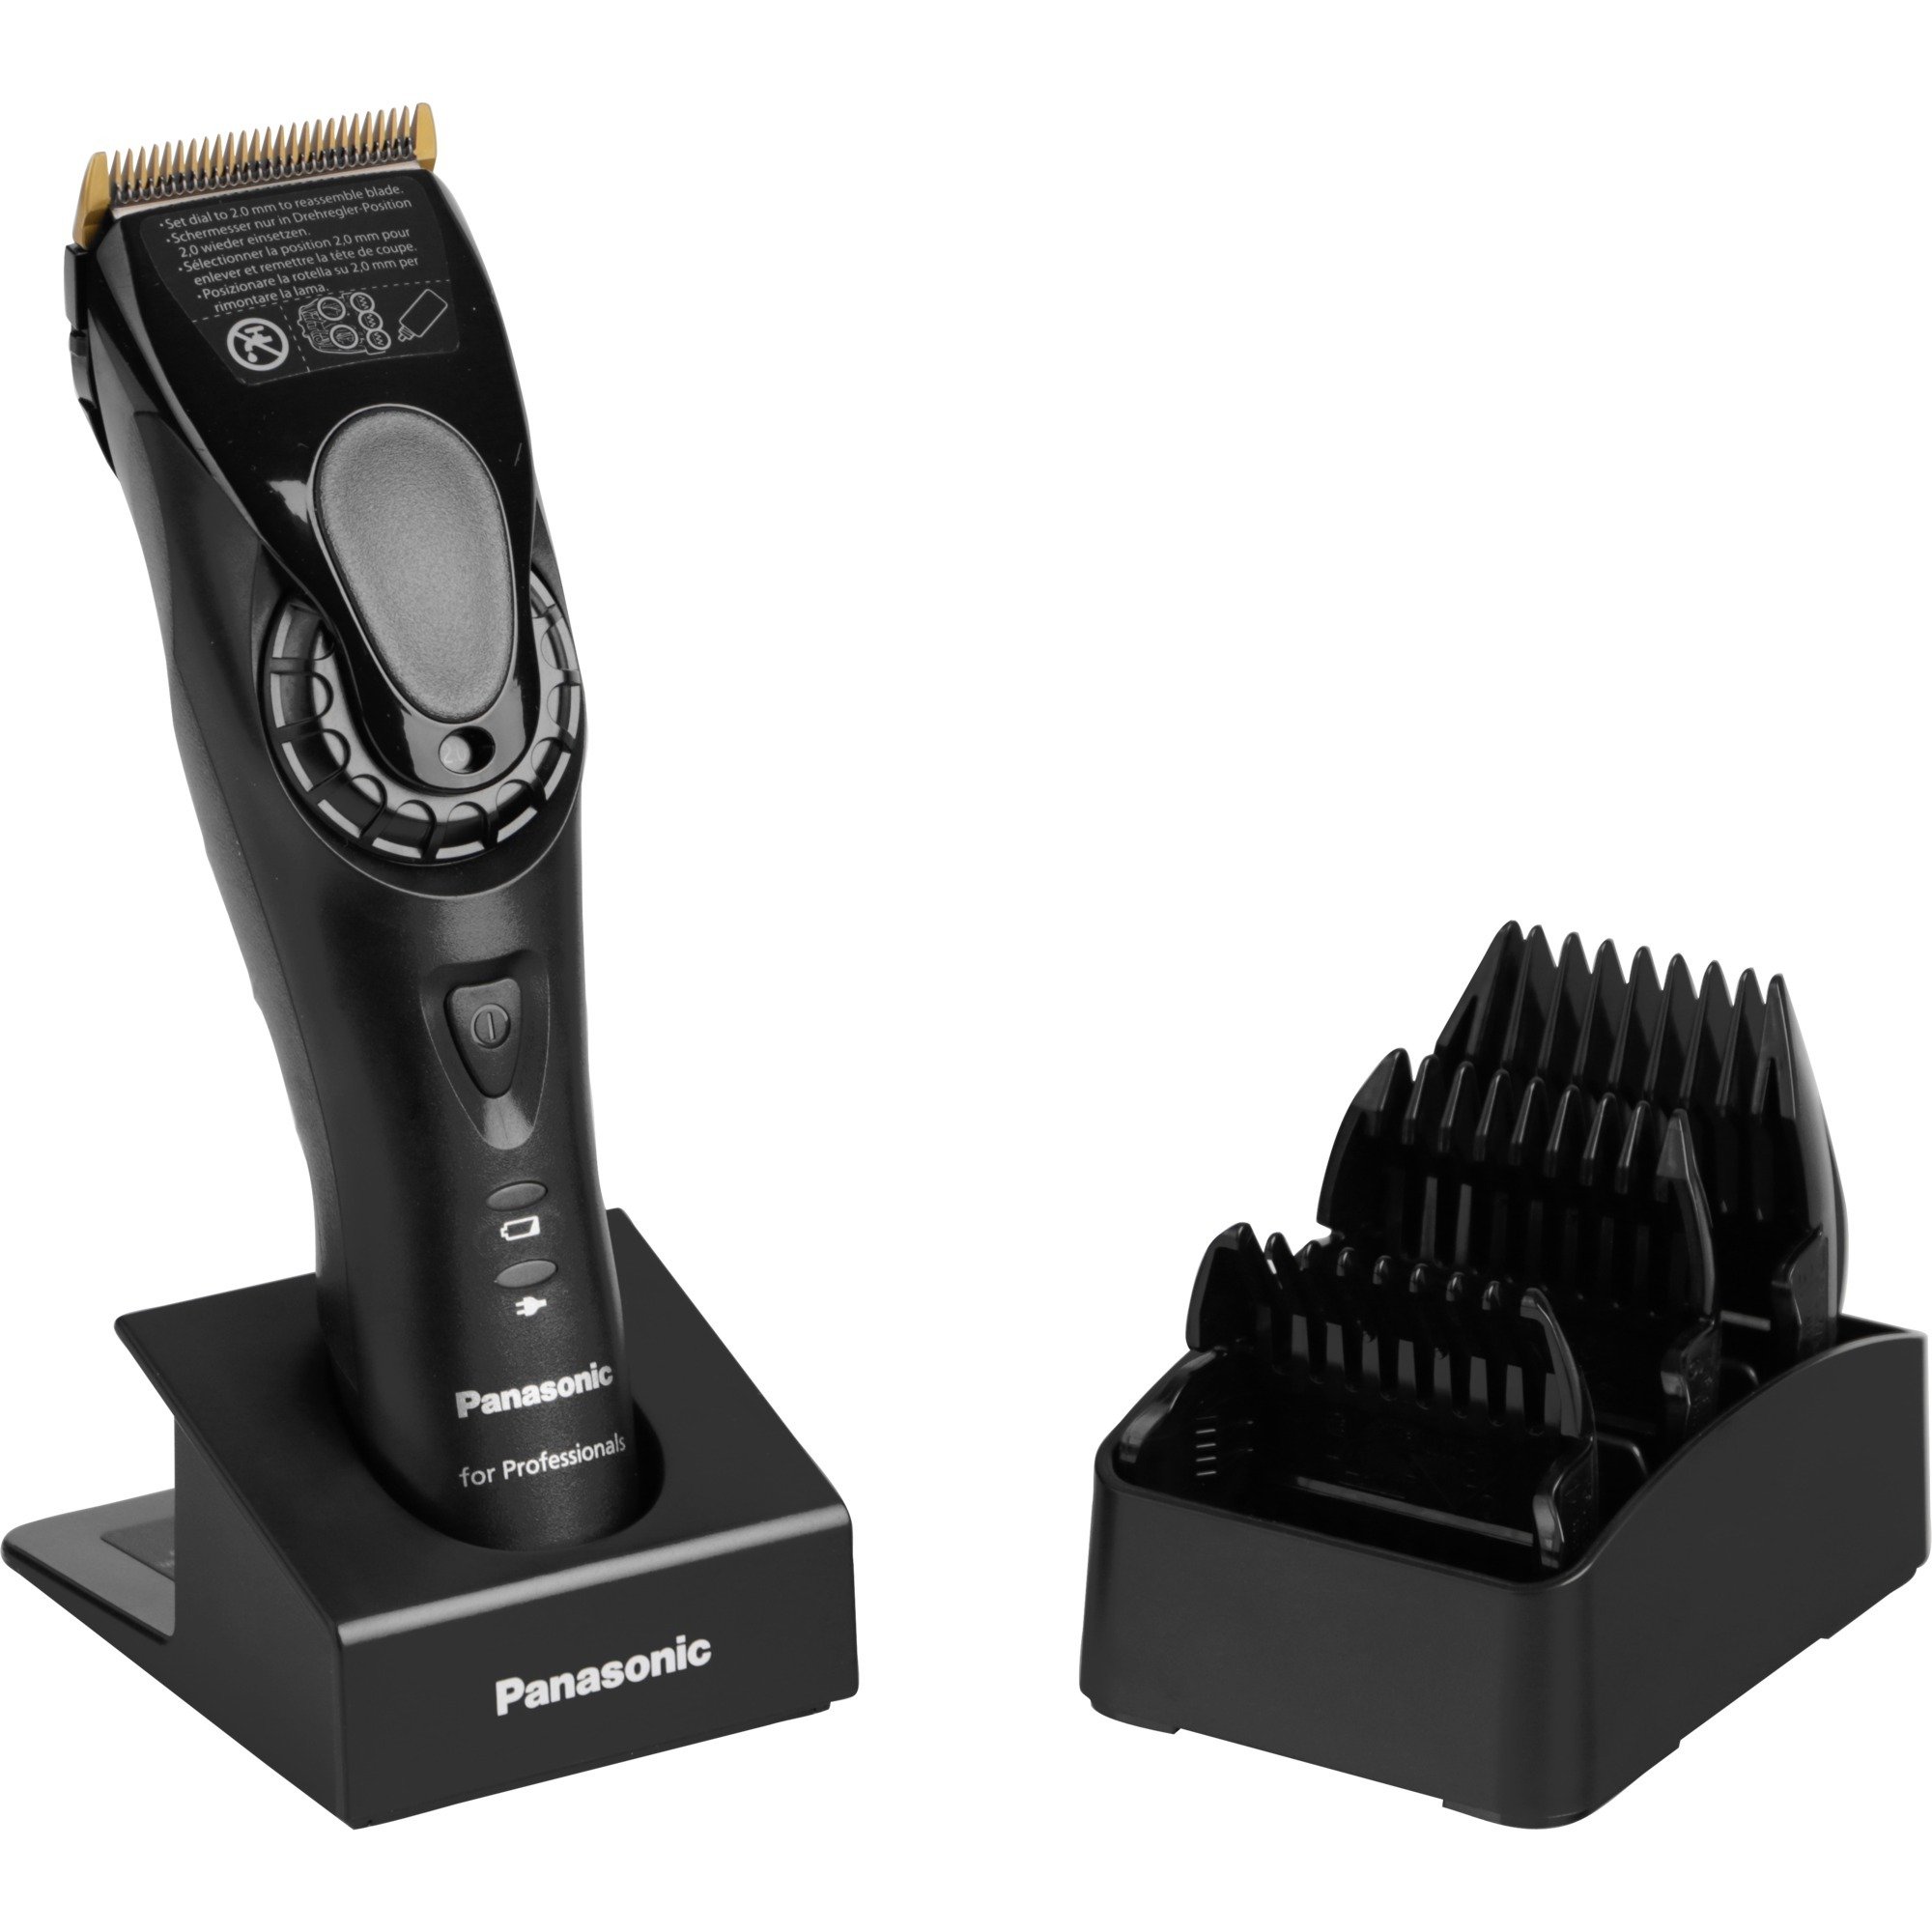 Image of Alternate - ER-HGP82, Haarschneider online einkaufen bei Alternate